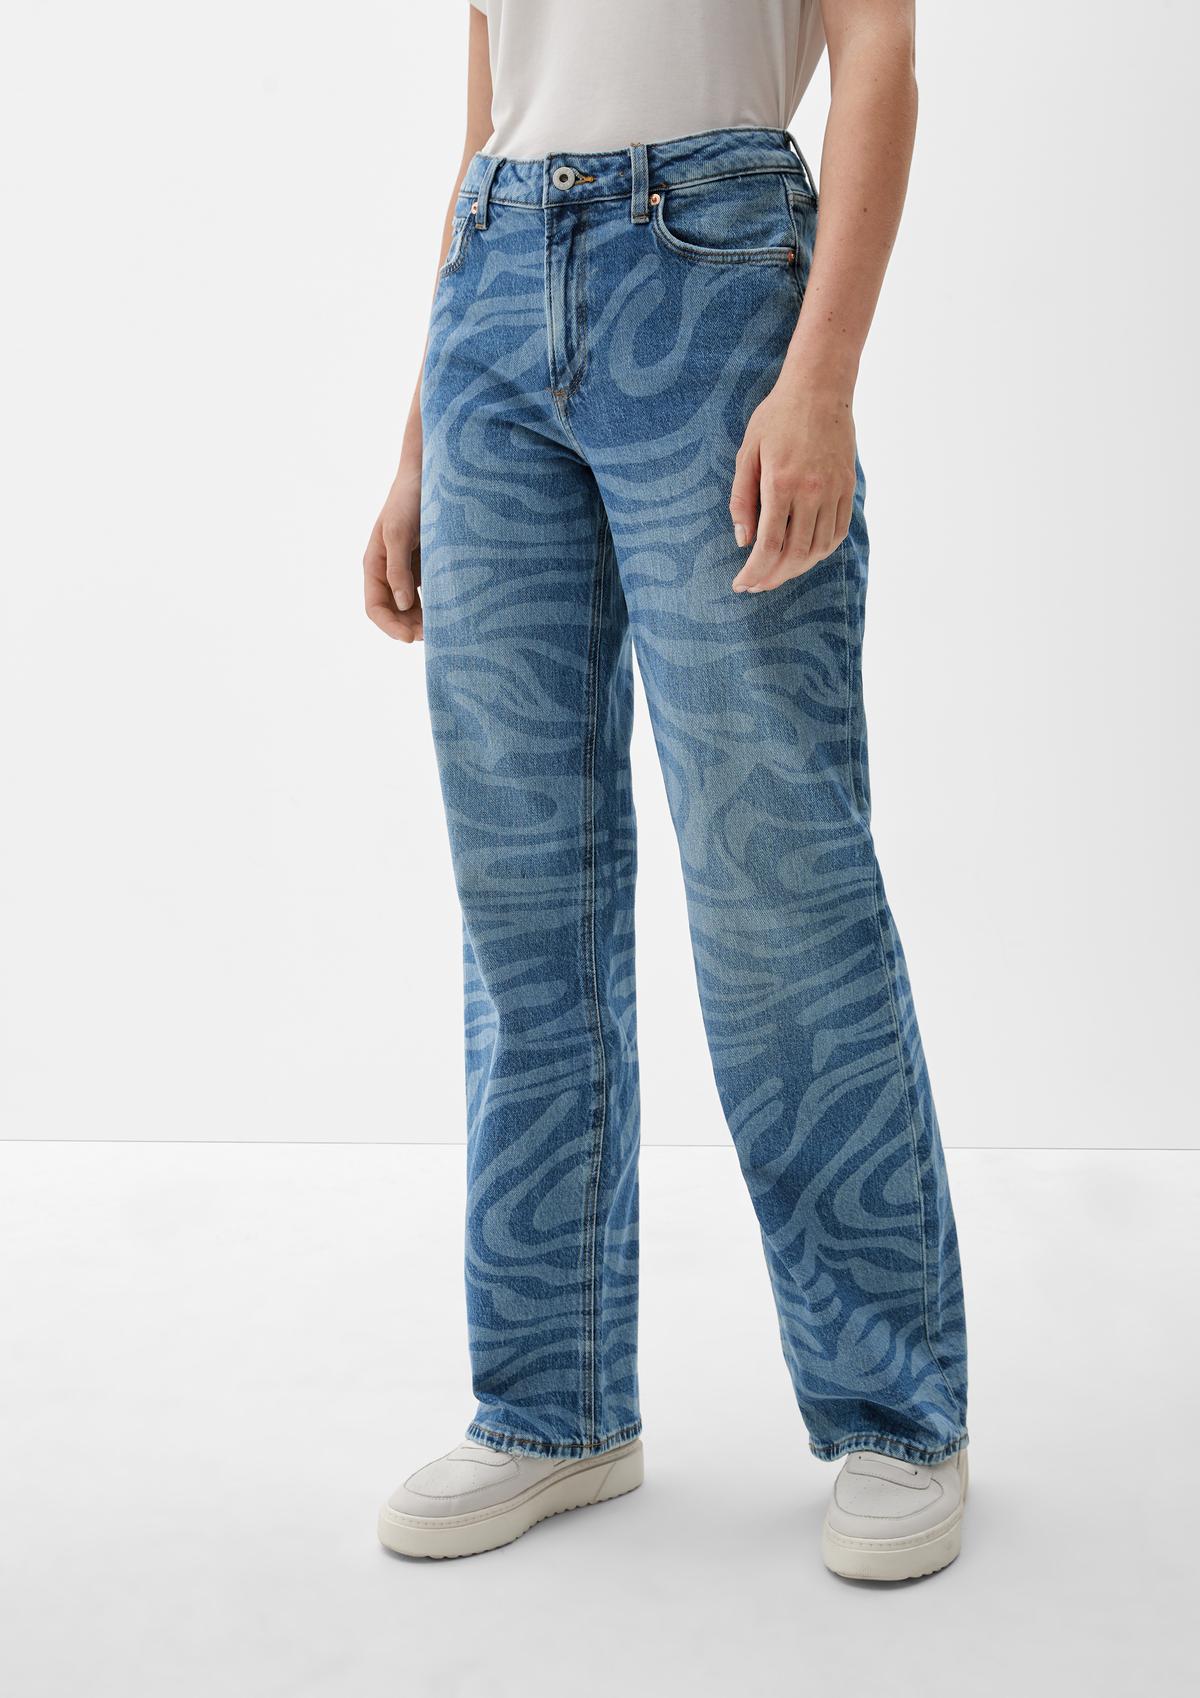 s.Oliver Wijde pijpen: jeans met garment wash